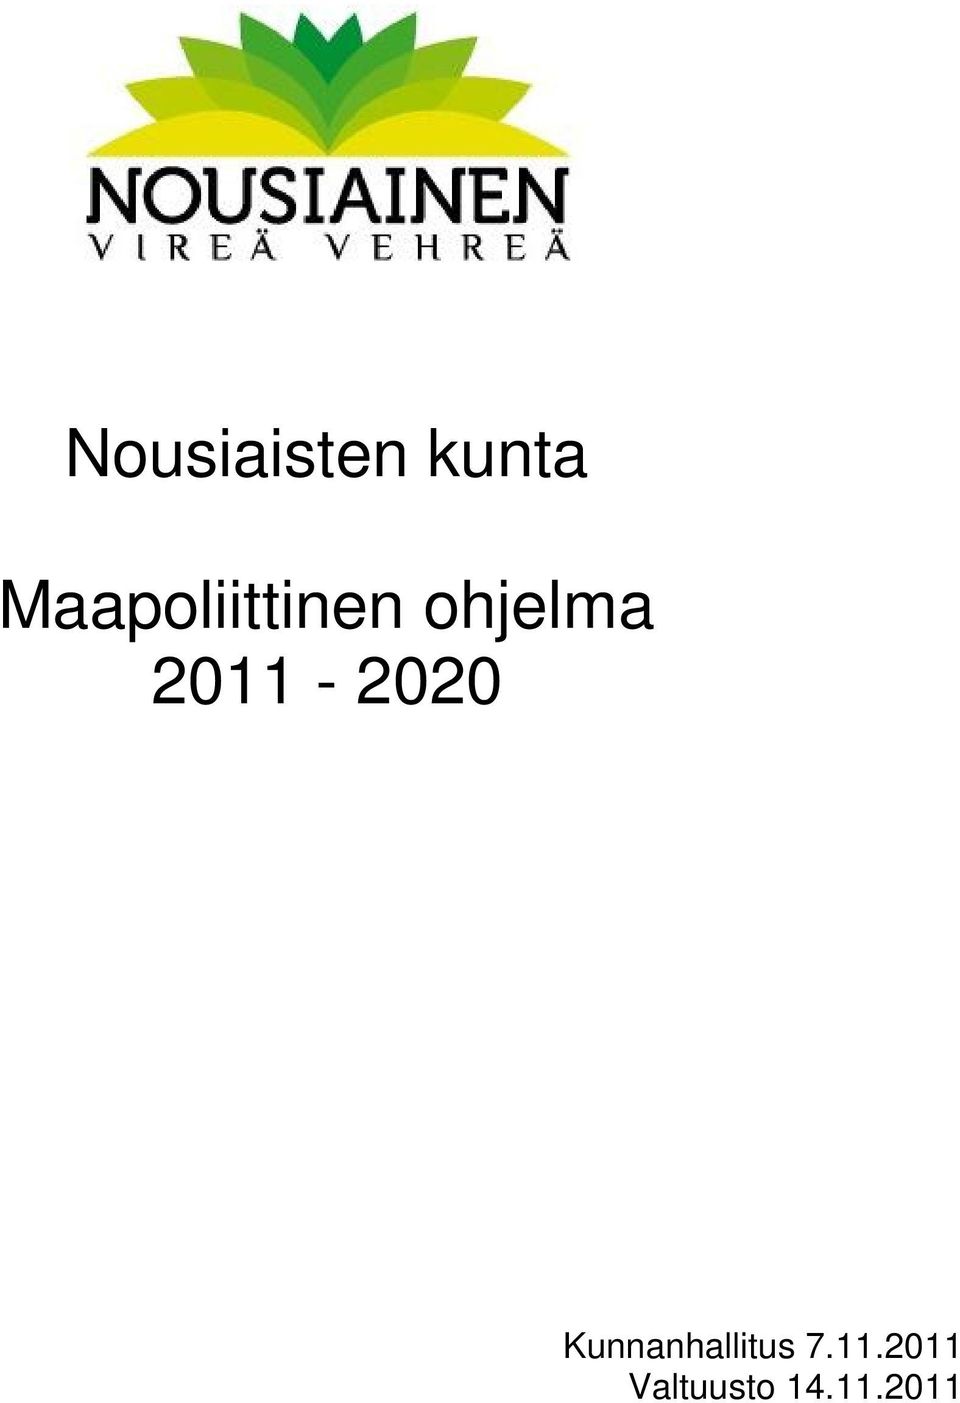 2011-2020